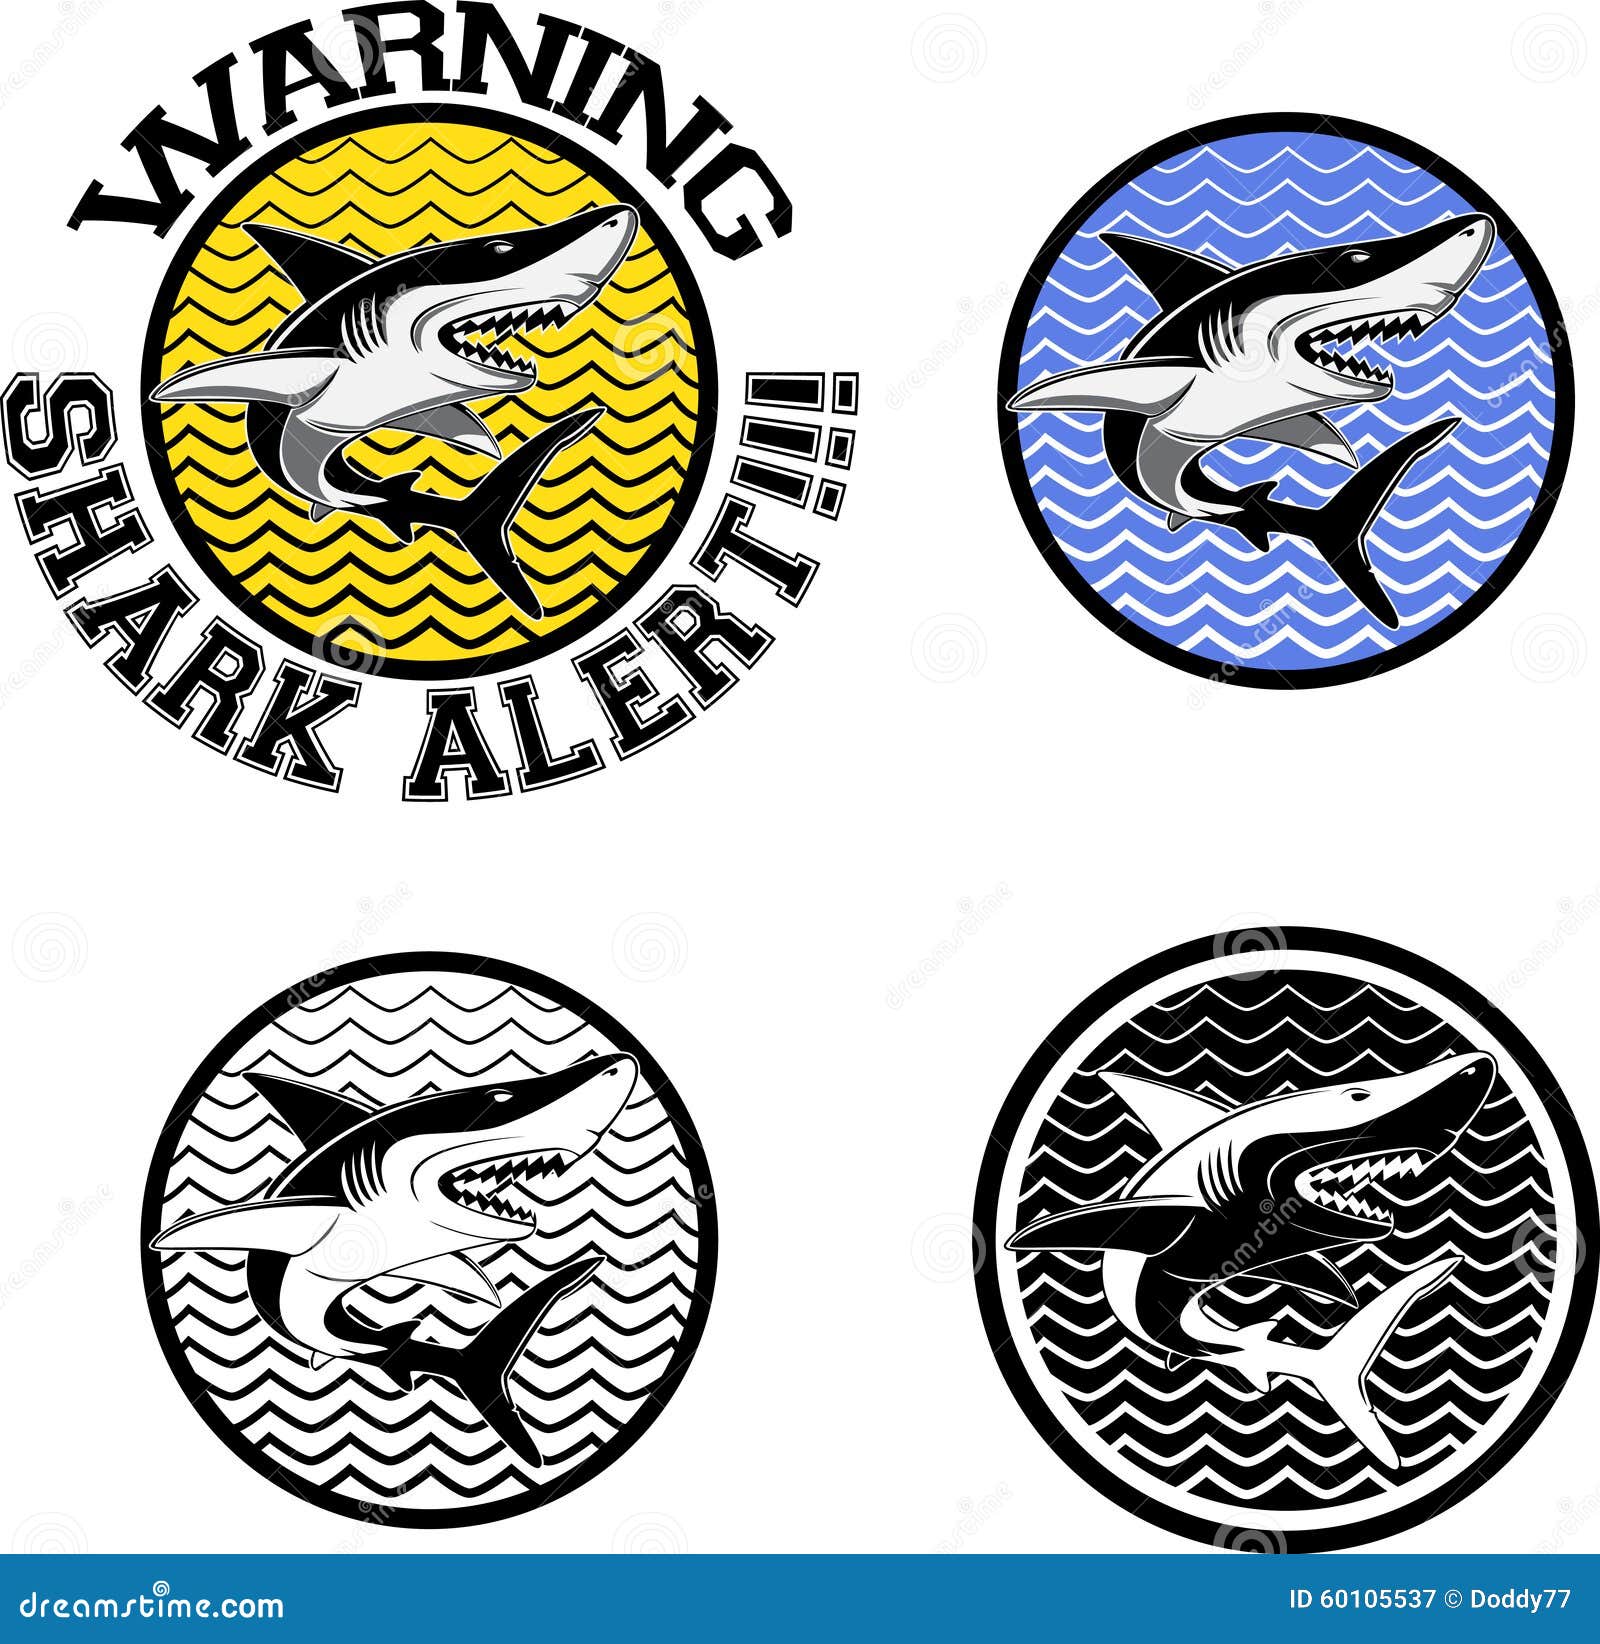 Shark And Sign Royalty-Free Stock Photography | CartoonDealer.com ...